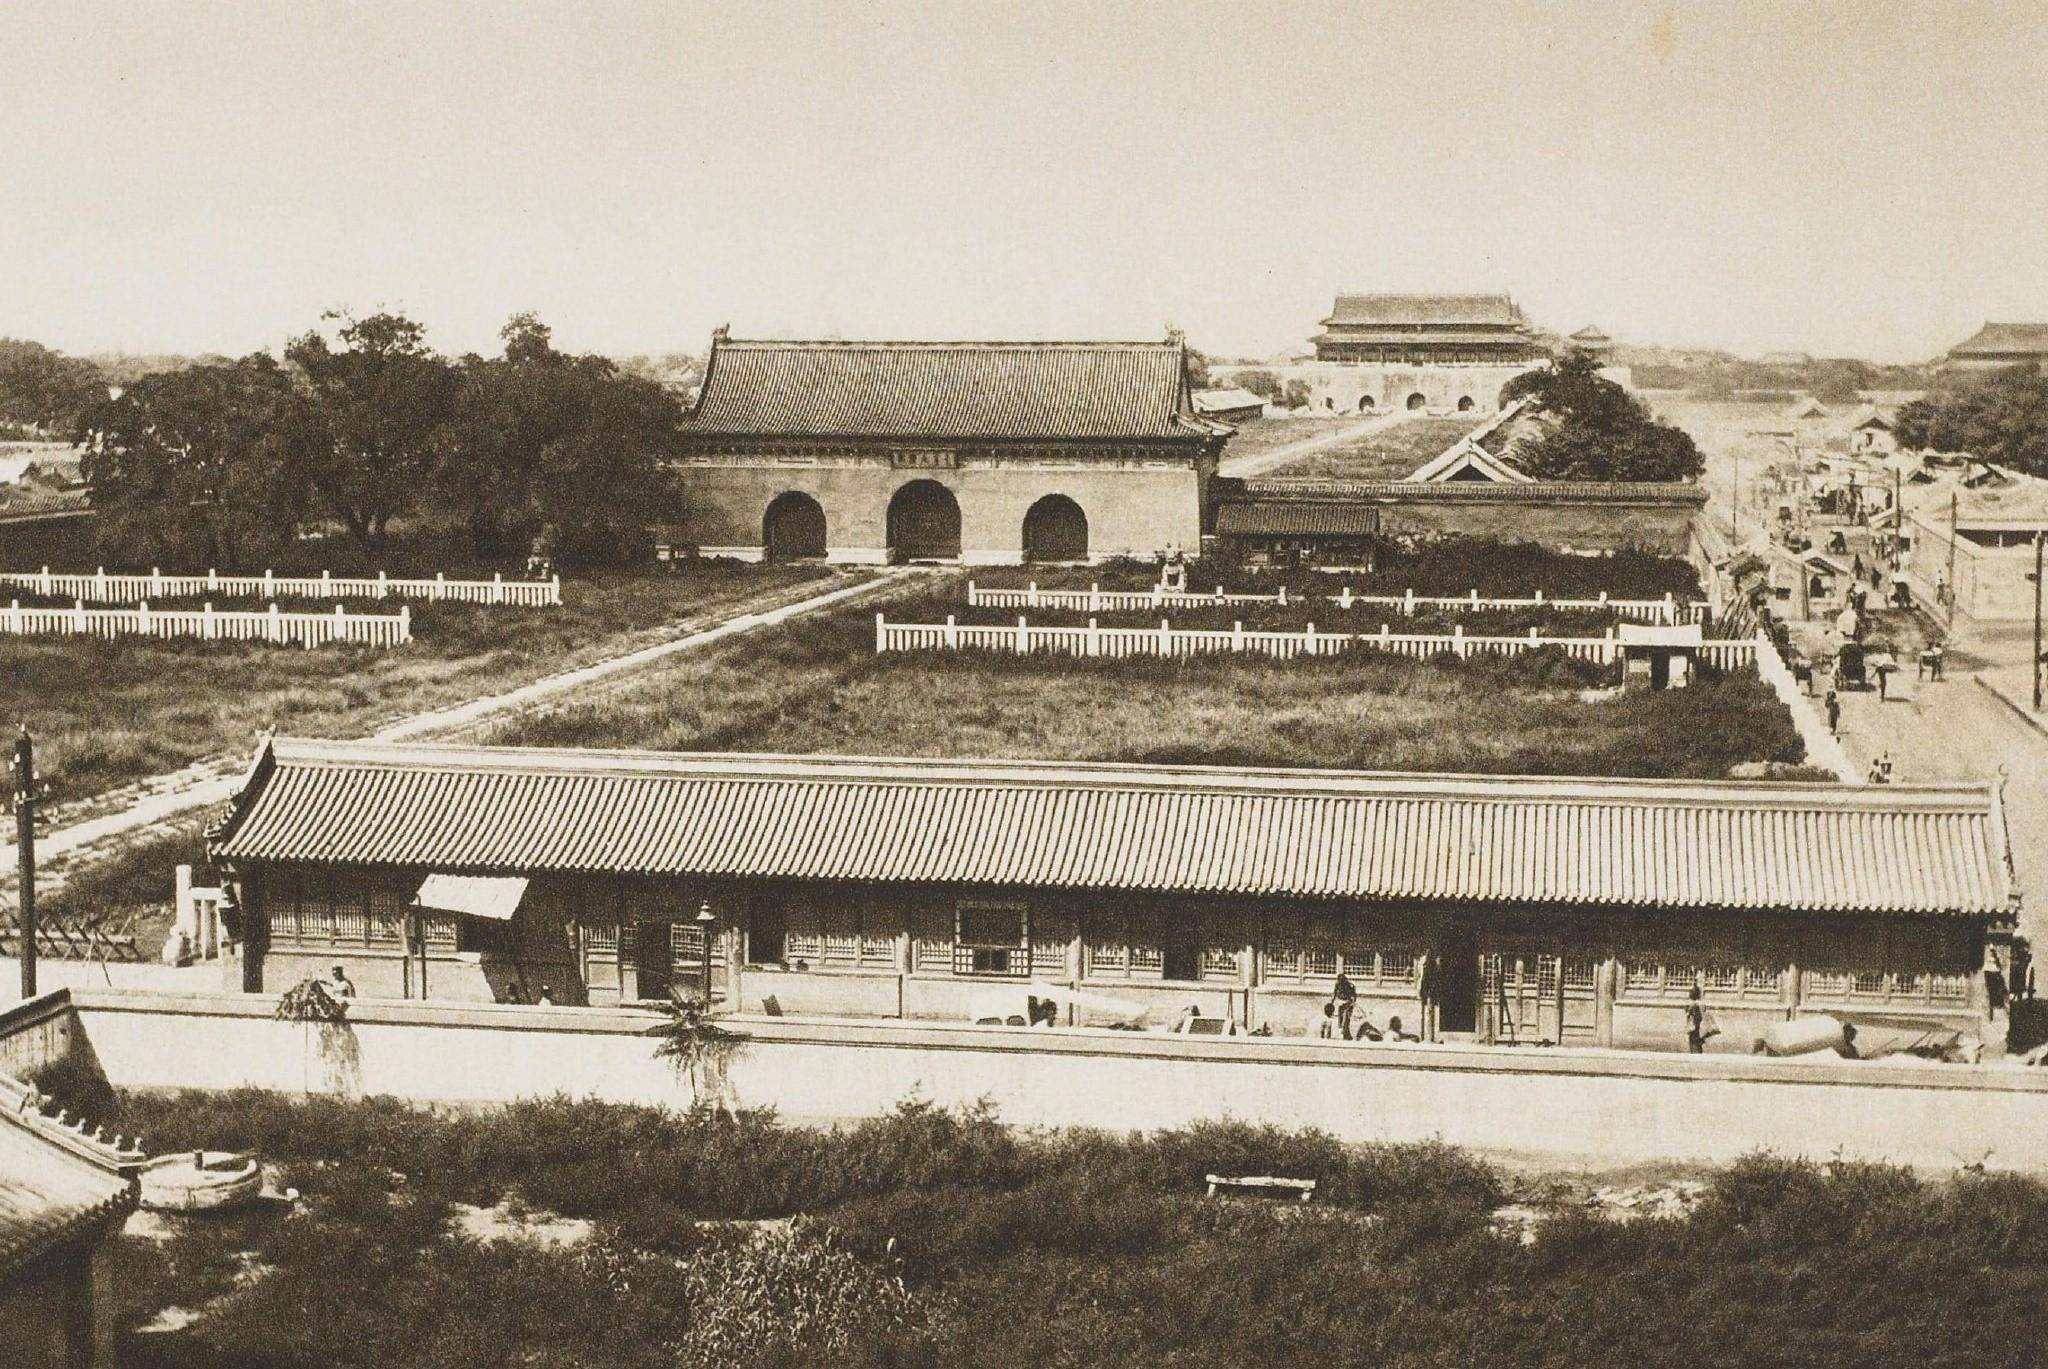 溥仪统治期间的北京城:颐和园里杂草丛生,但古城墙依旧雄伟壮观